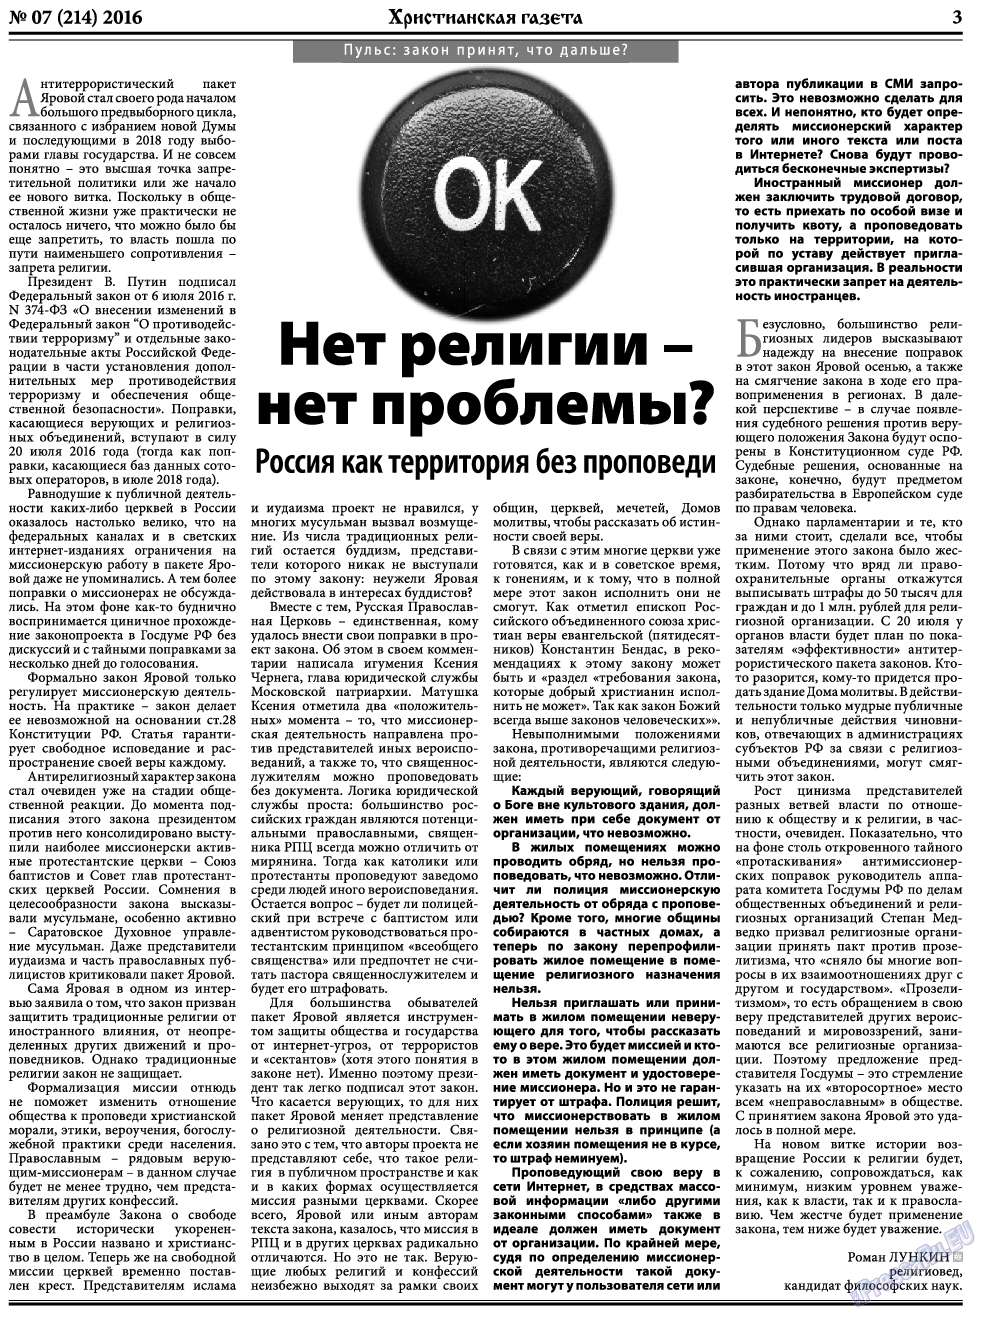 Христианская газета, газета. 2016 №7 стр.3